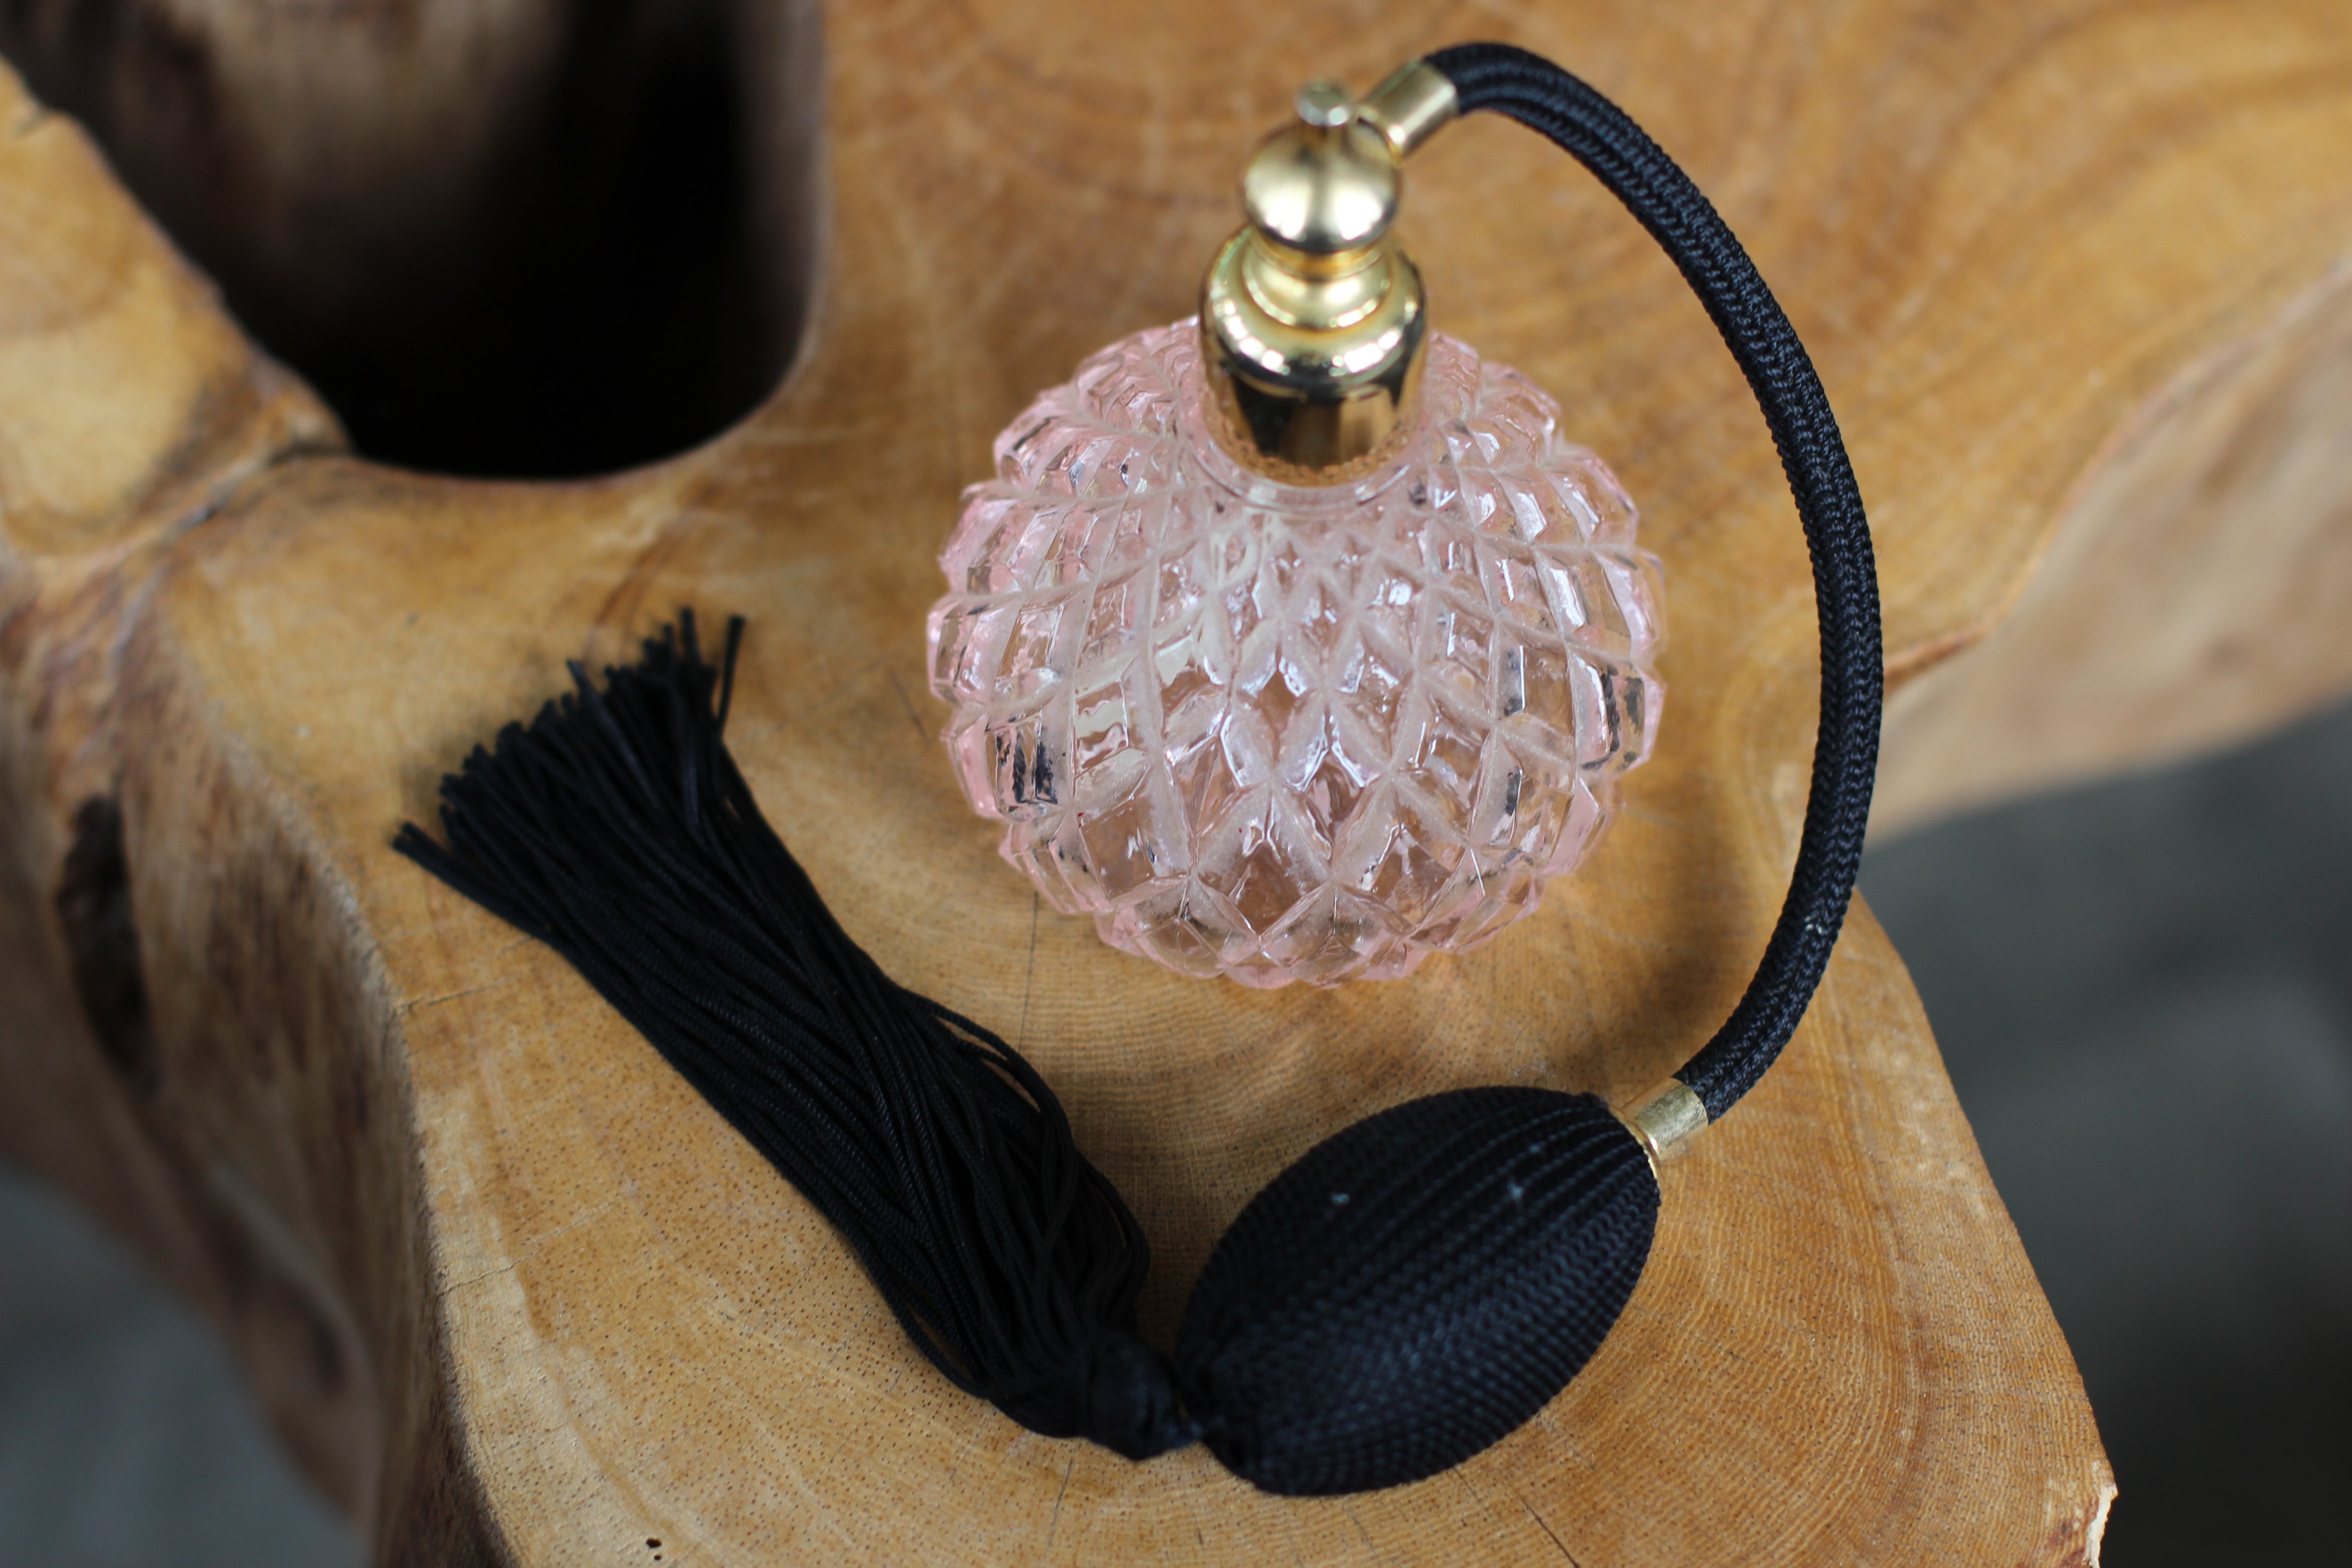 Antique Pink Black Bulb Automizer Perfume Bottle